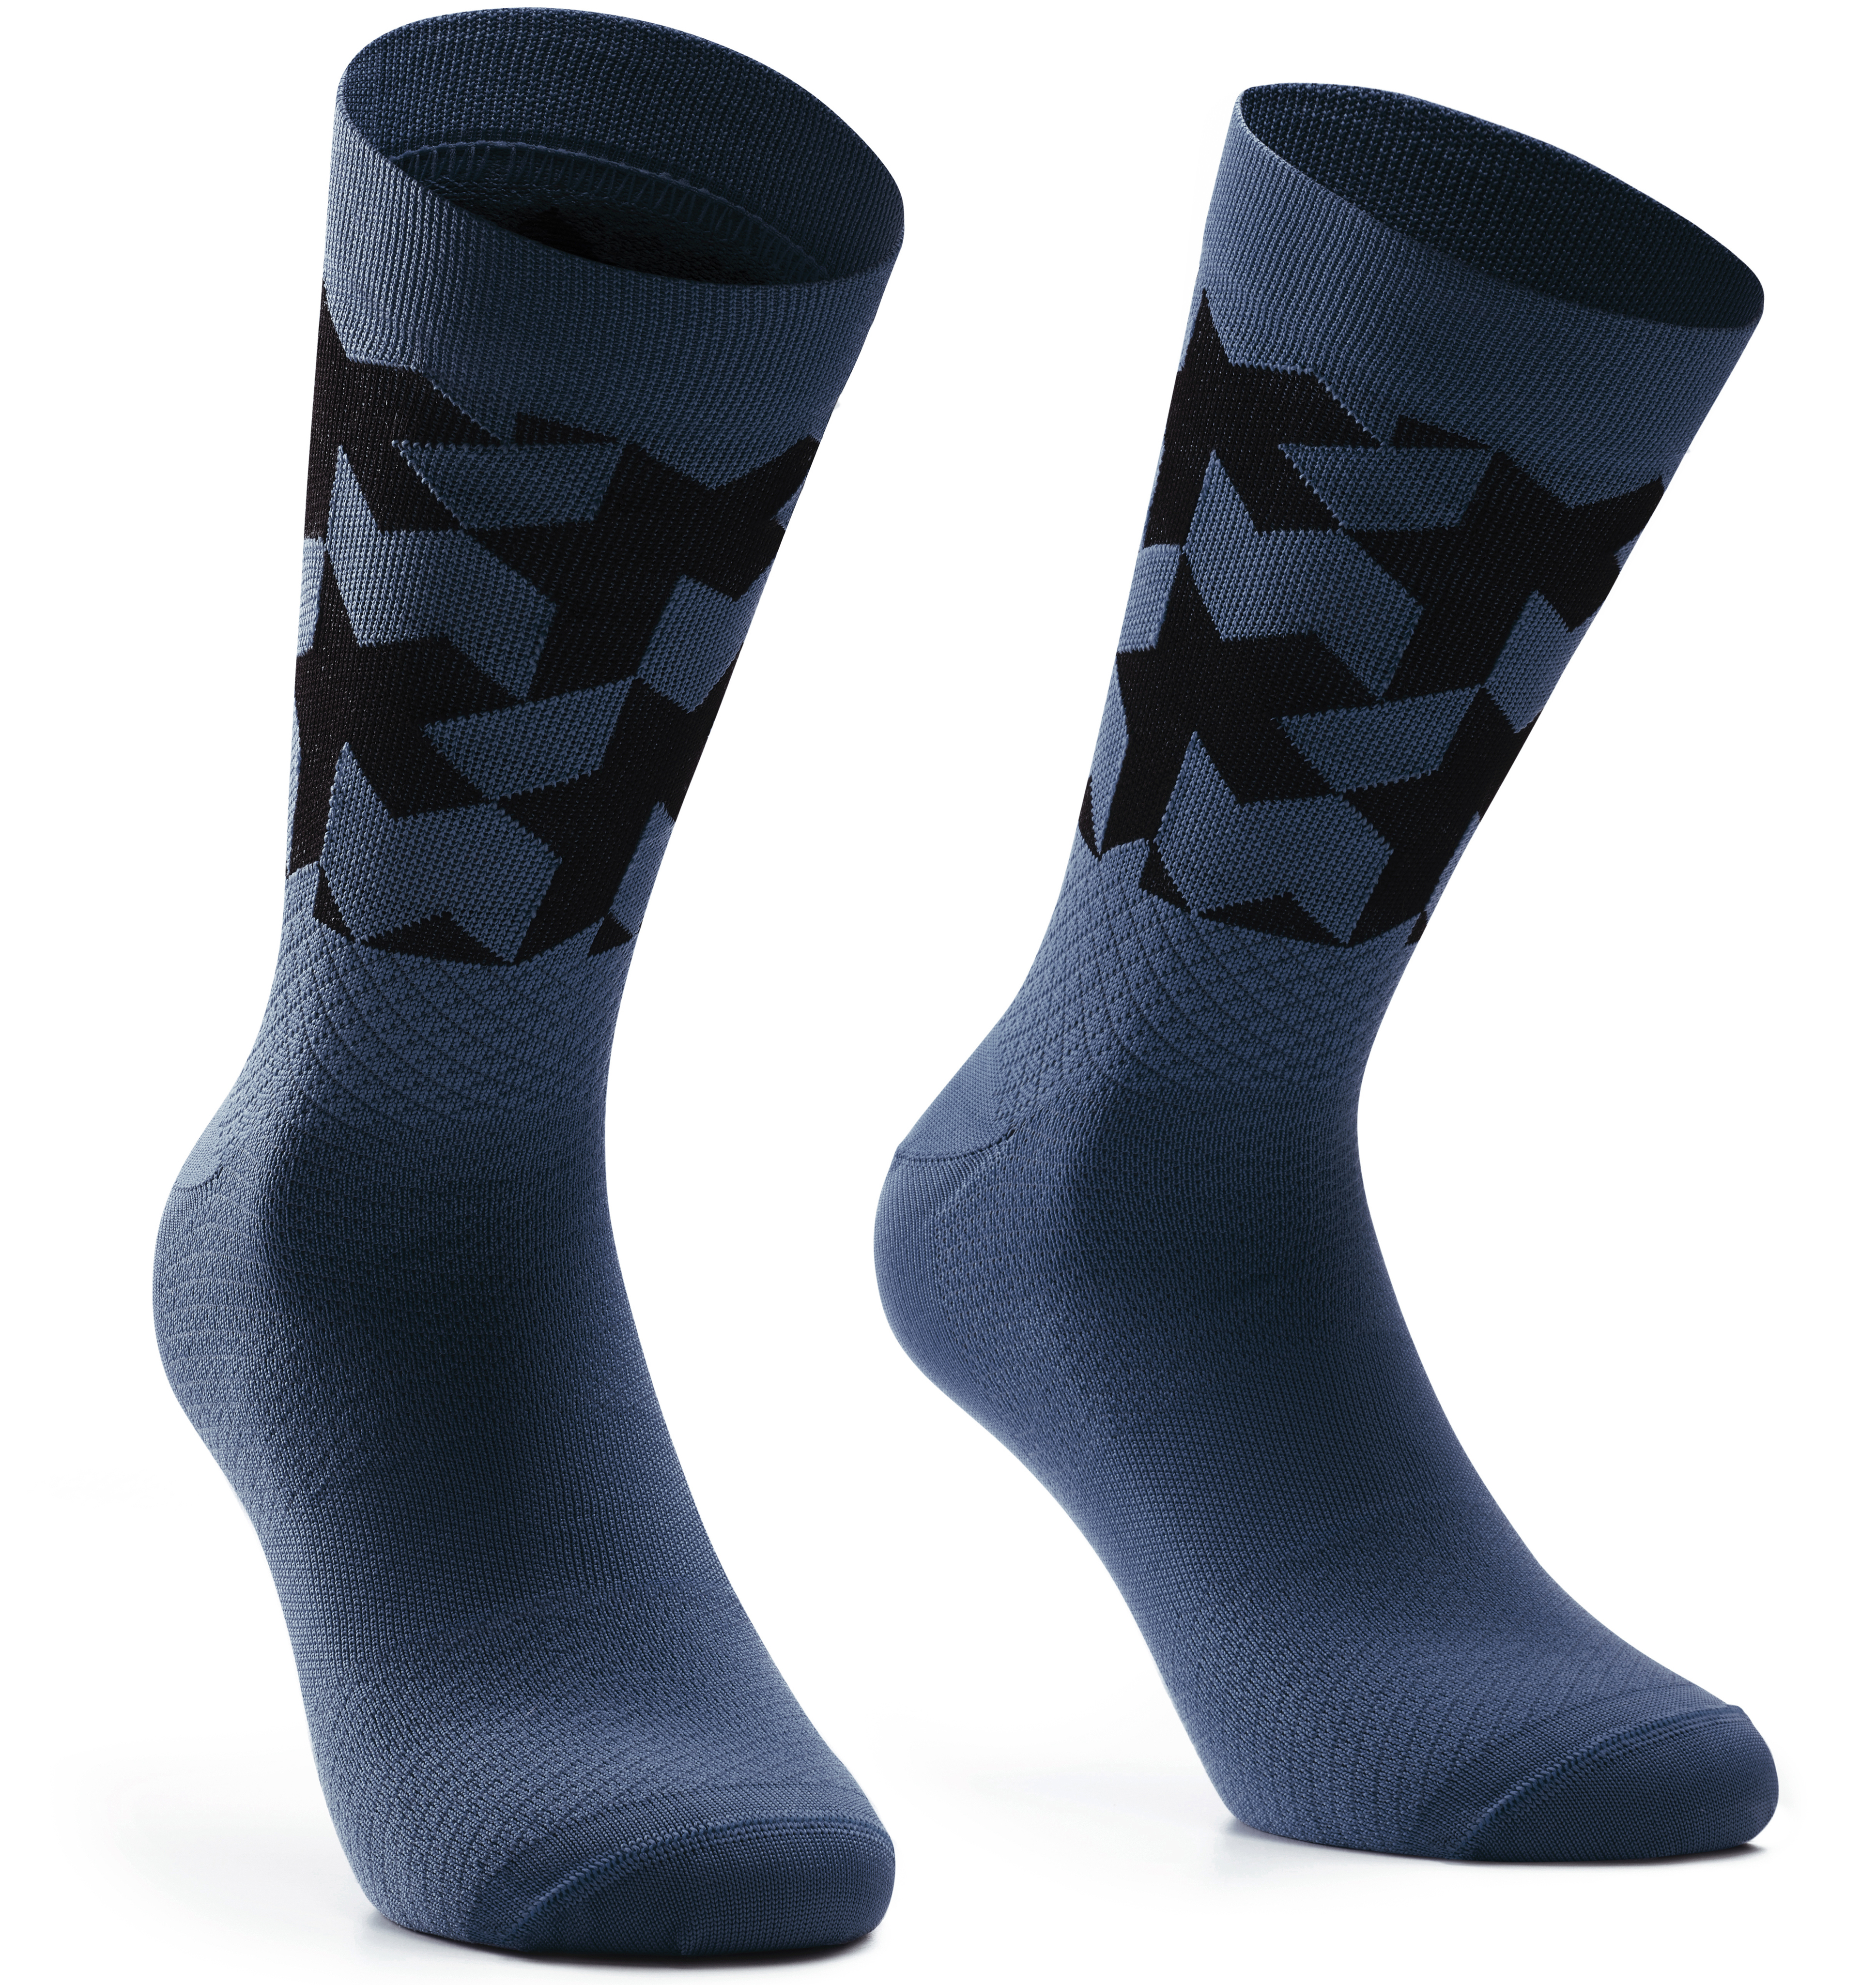 Носки ASSOS Monogram Socks Evo, мужские, сине-черные, II/43-46 фото 